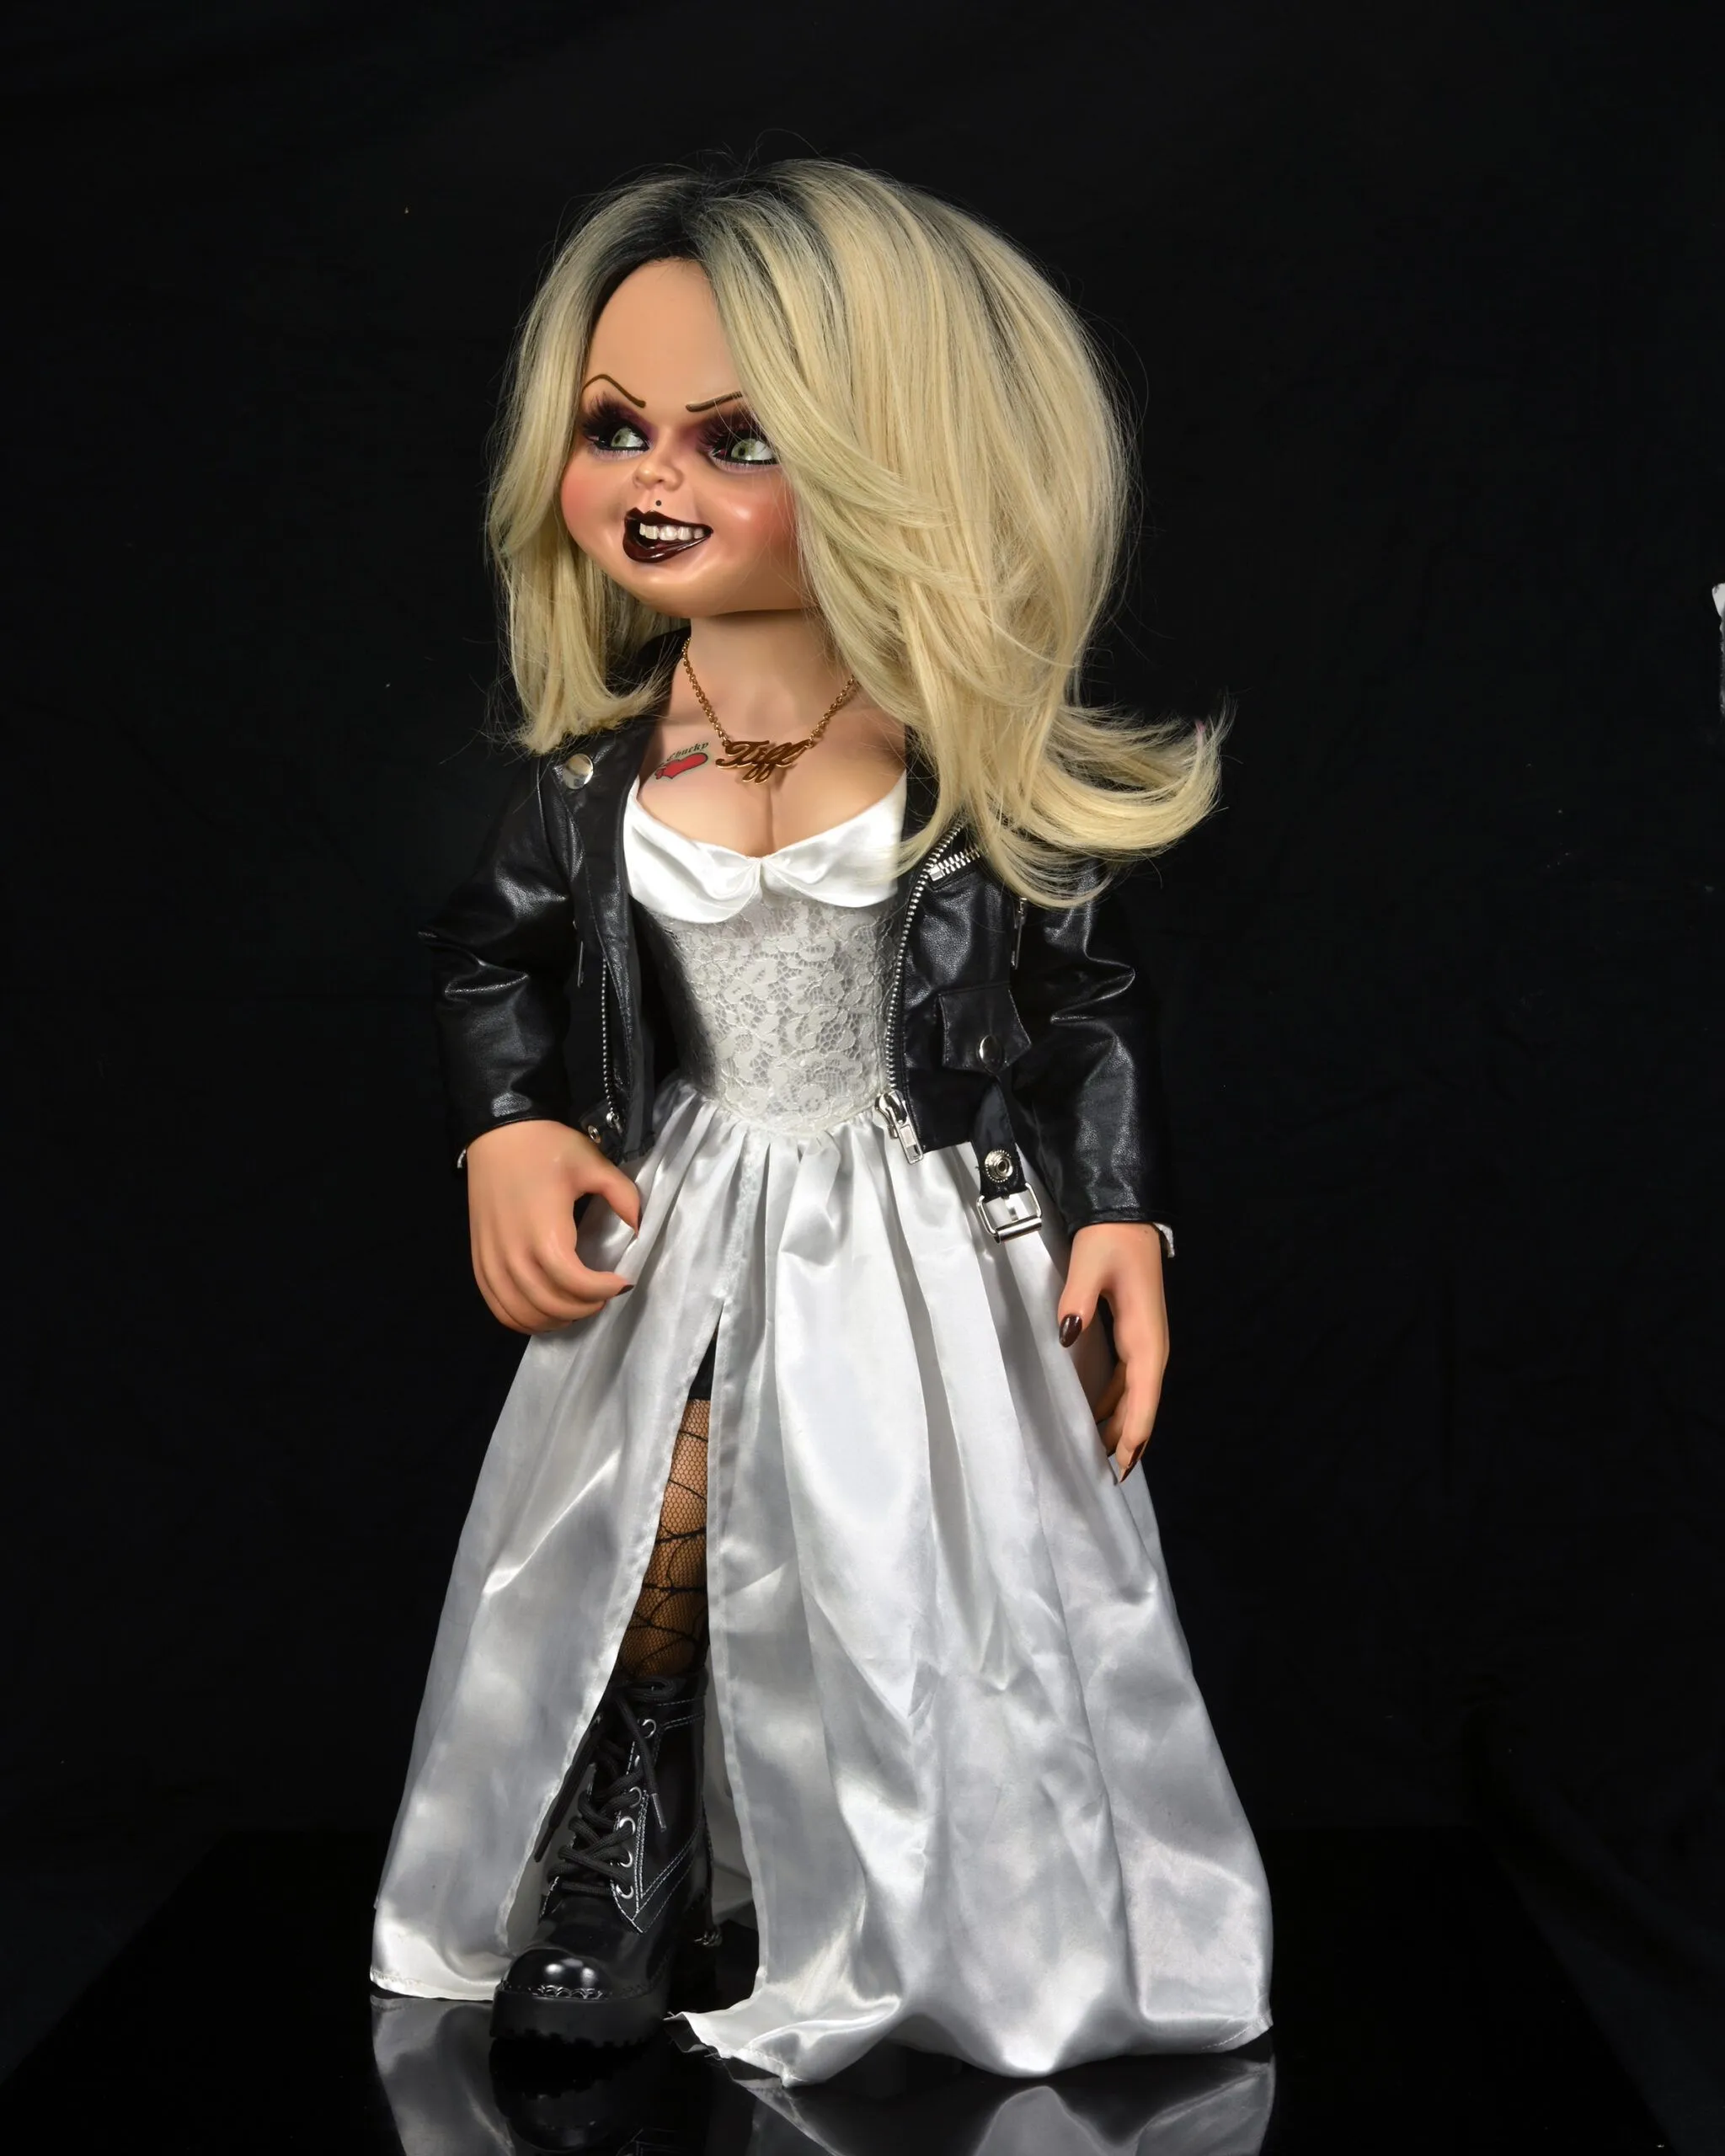 ToysTNT - Chucky + Tiffany La novia de Chucky Réplica Muñeco 1/1 76 cm NECA  **